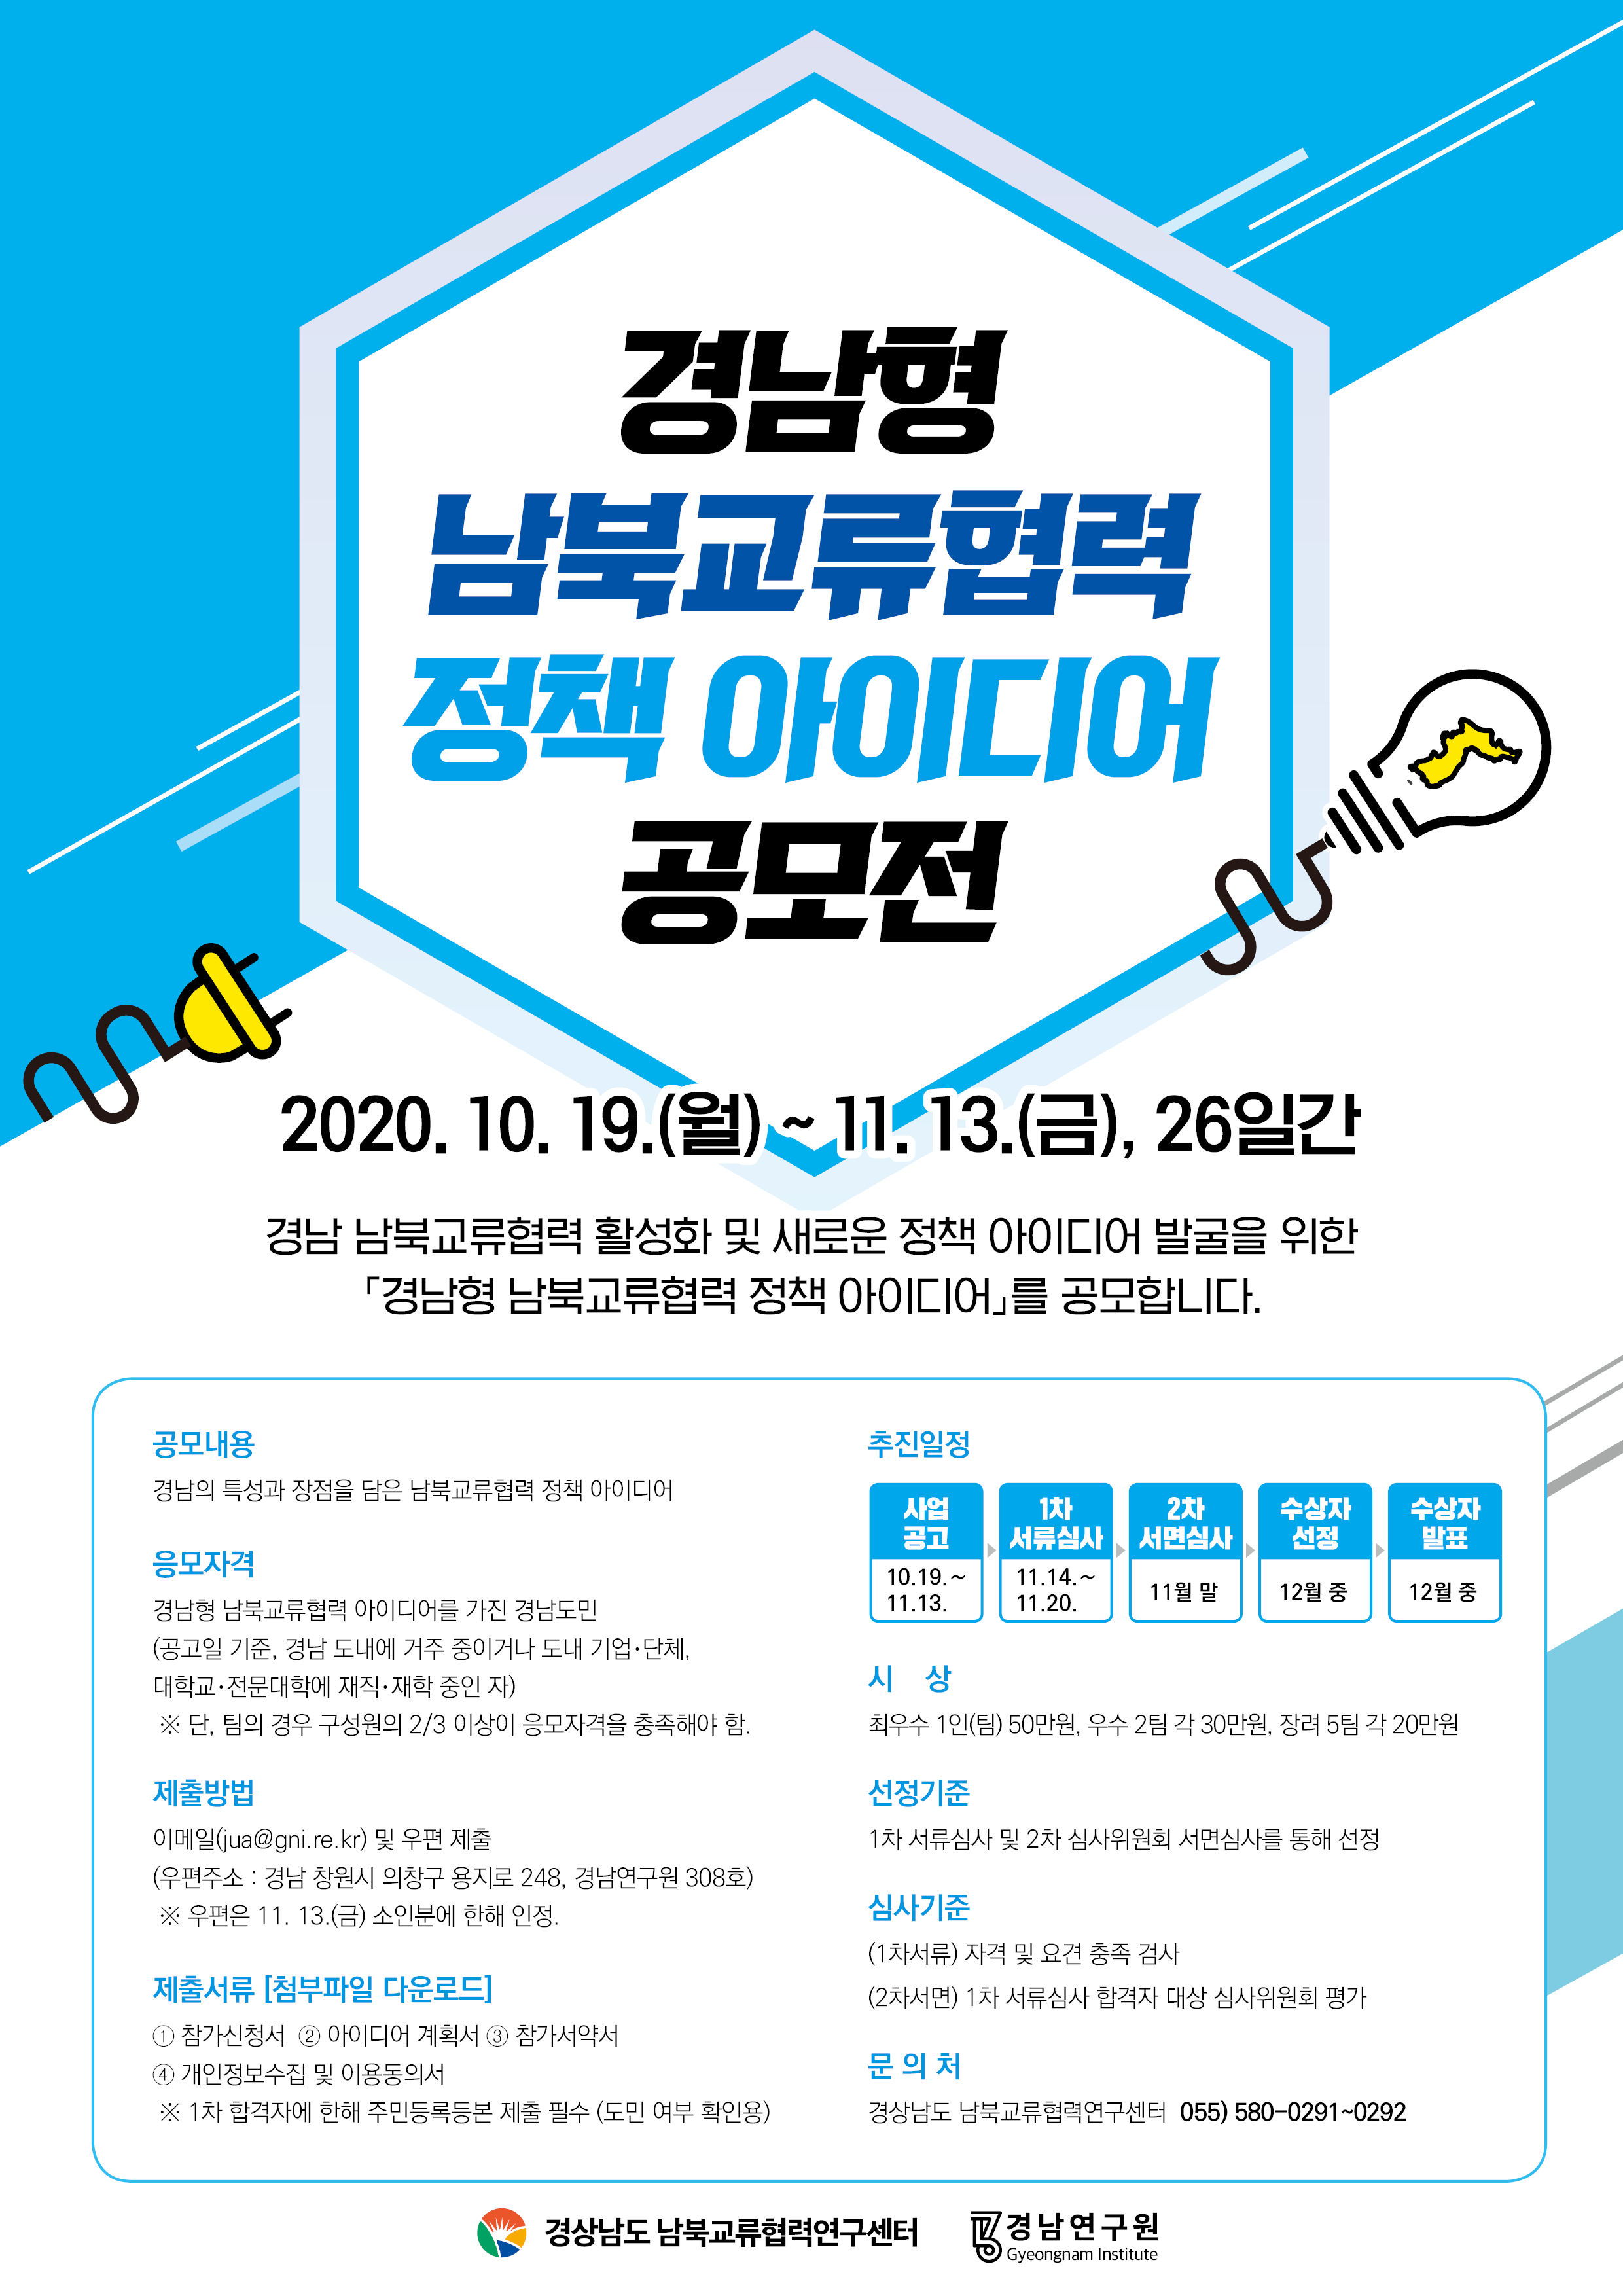 2020 경남형 남북교류협력 정책 아이디어 공모 홍보 협조 2